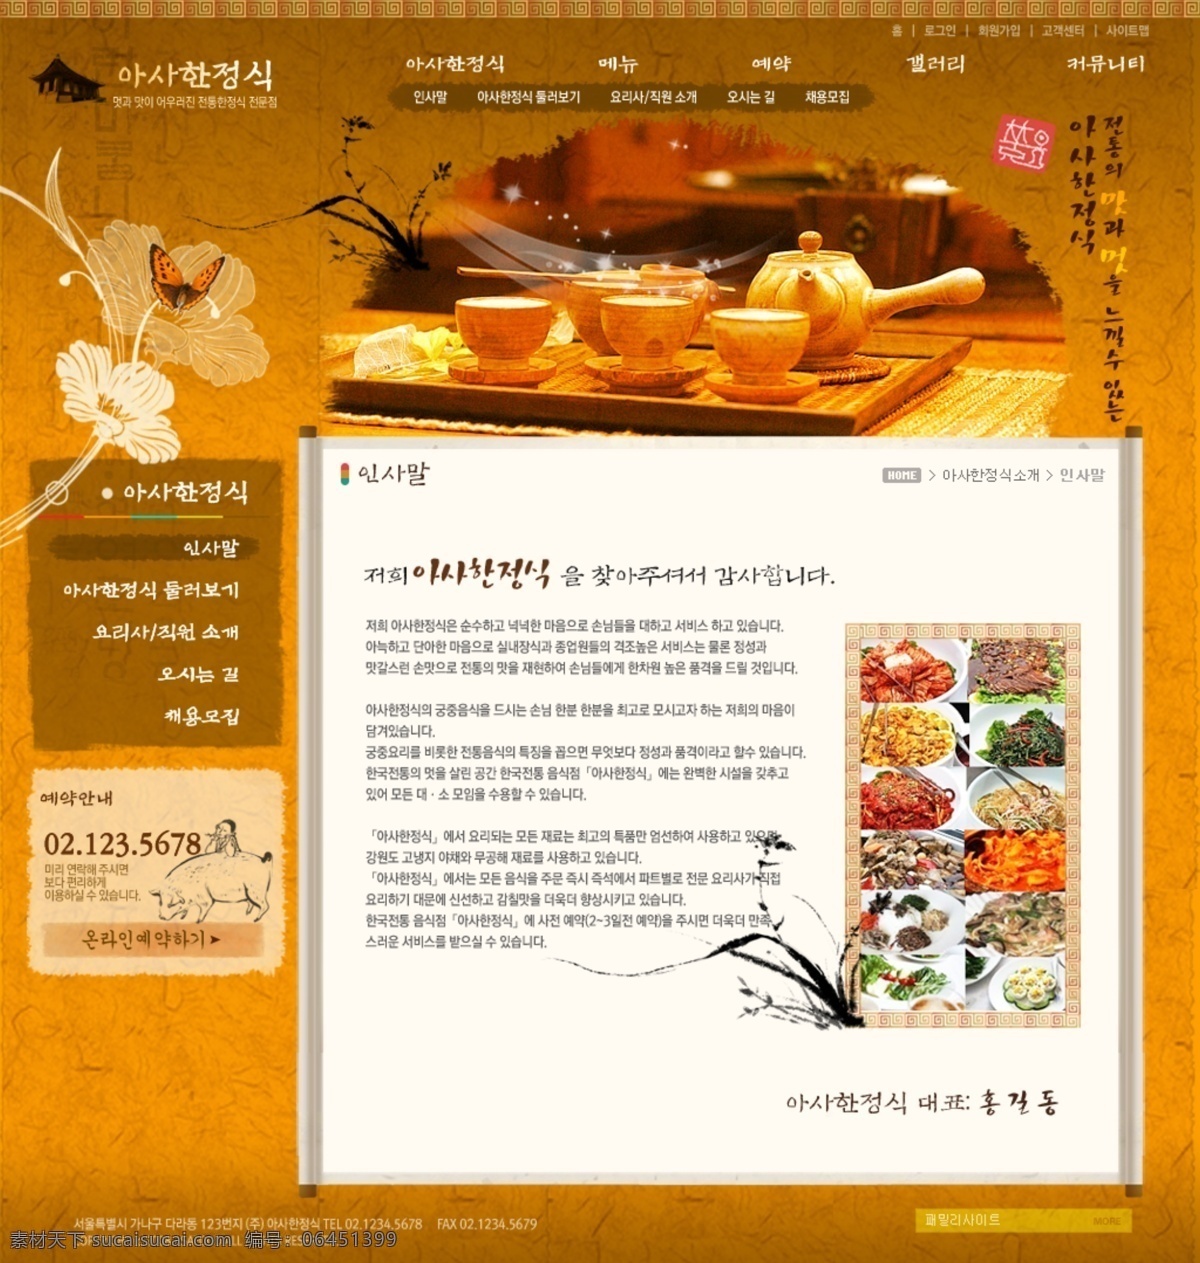 古典网页模板 韩国模板 美食广告 美食网页模板 企业网站 网页 banner 网页模板 网页素材 美食 模板下载 网站模板 黄色网页 源文件